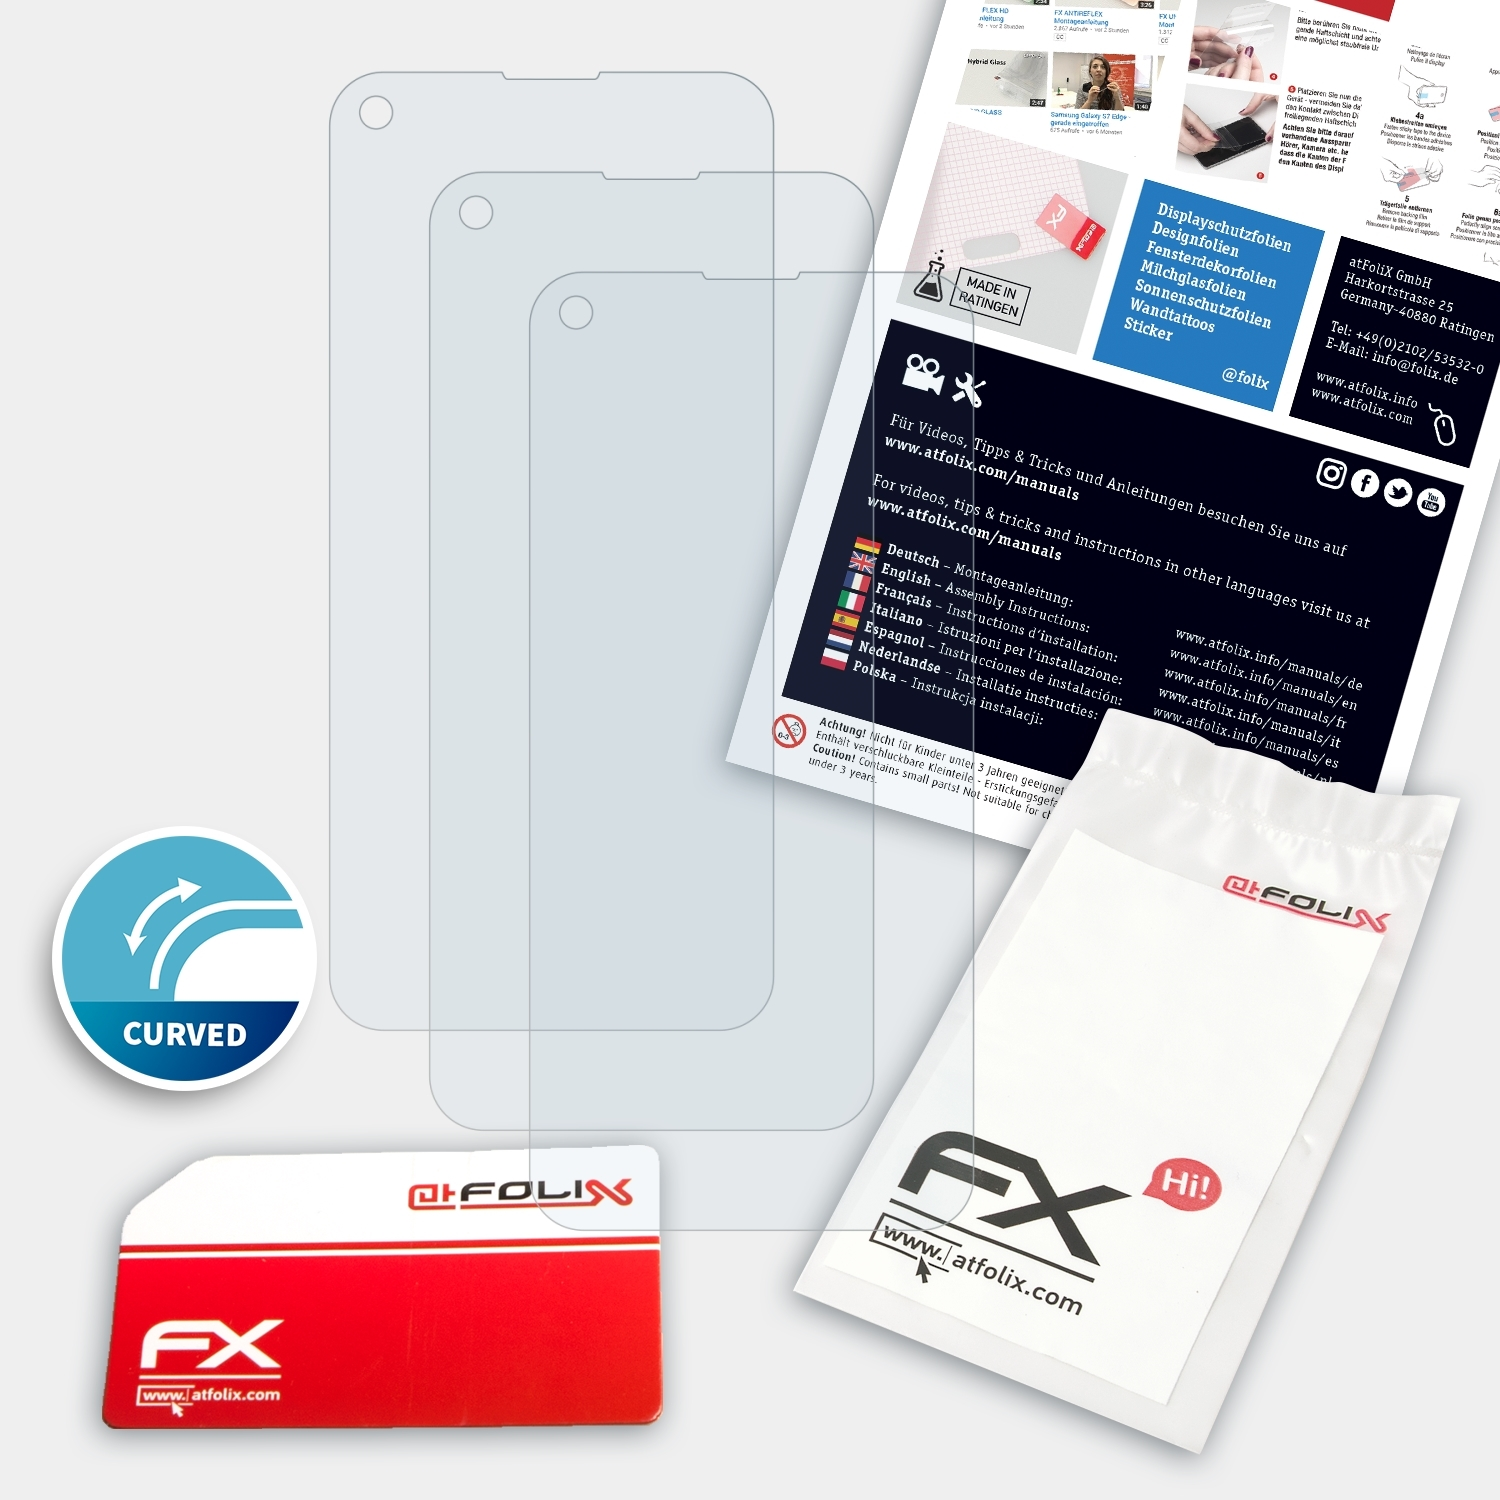 LG Displayschutz(für ATFOLIX K61) 3x FX-ActiFleX